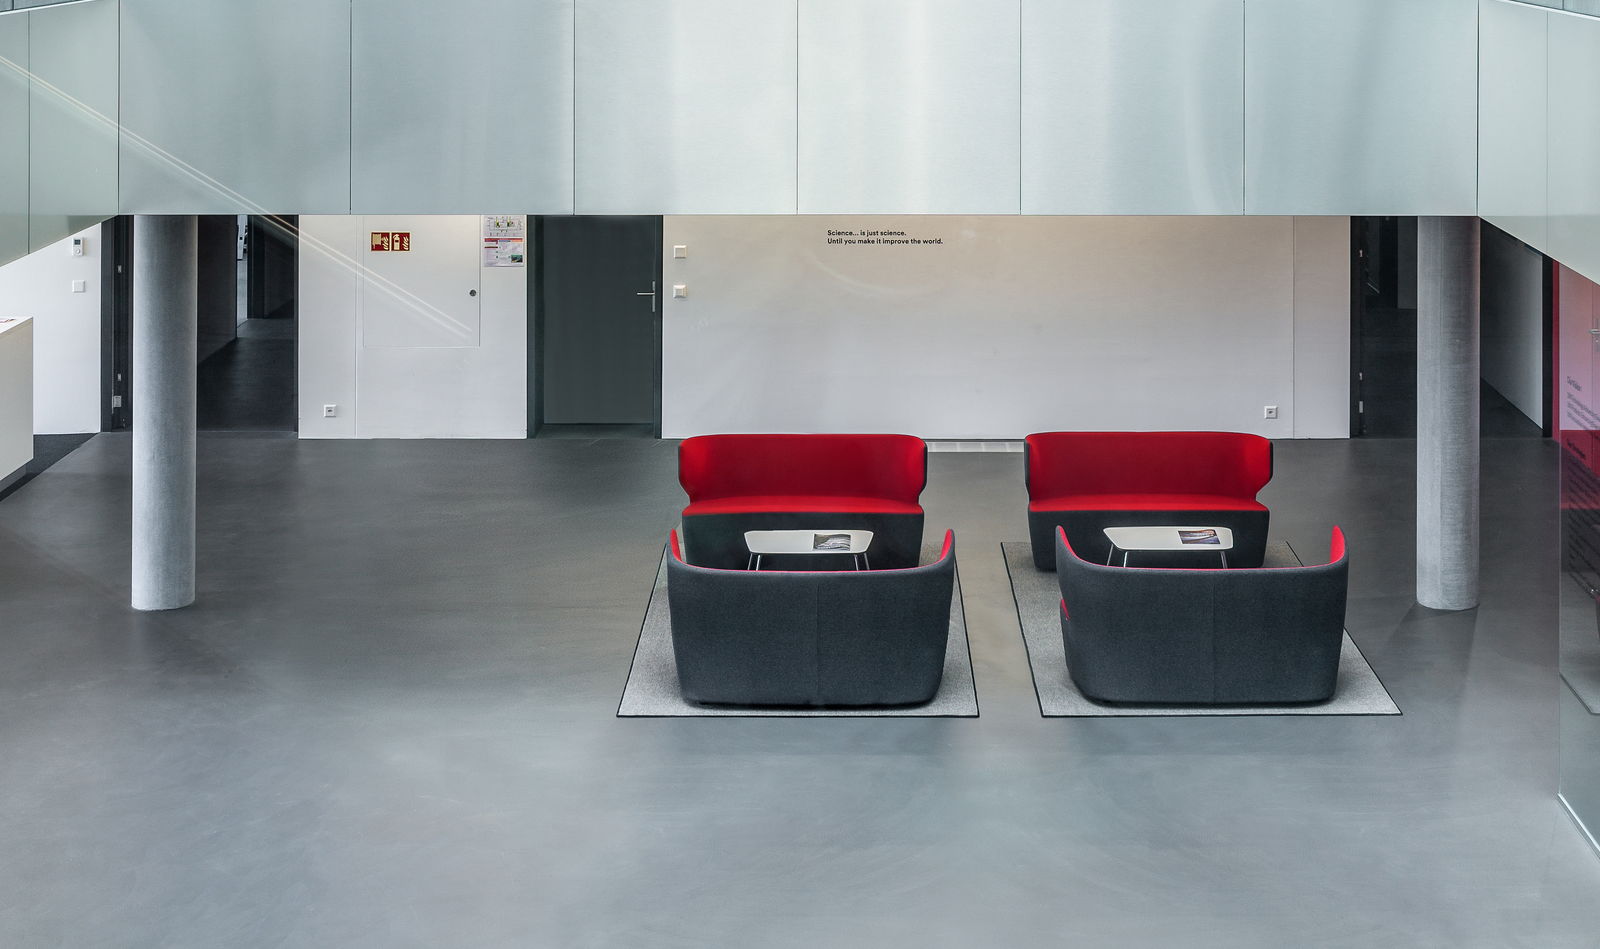 Girsberger Pablo Lounge Ruhezone Wartebereich modern Polstermöbel Firma Hotel schwarz rot